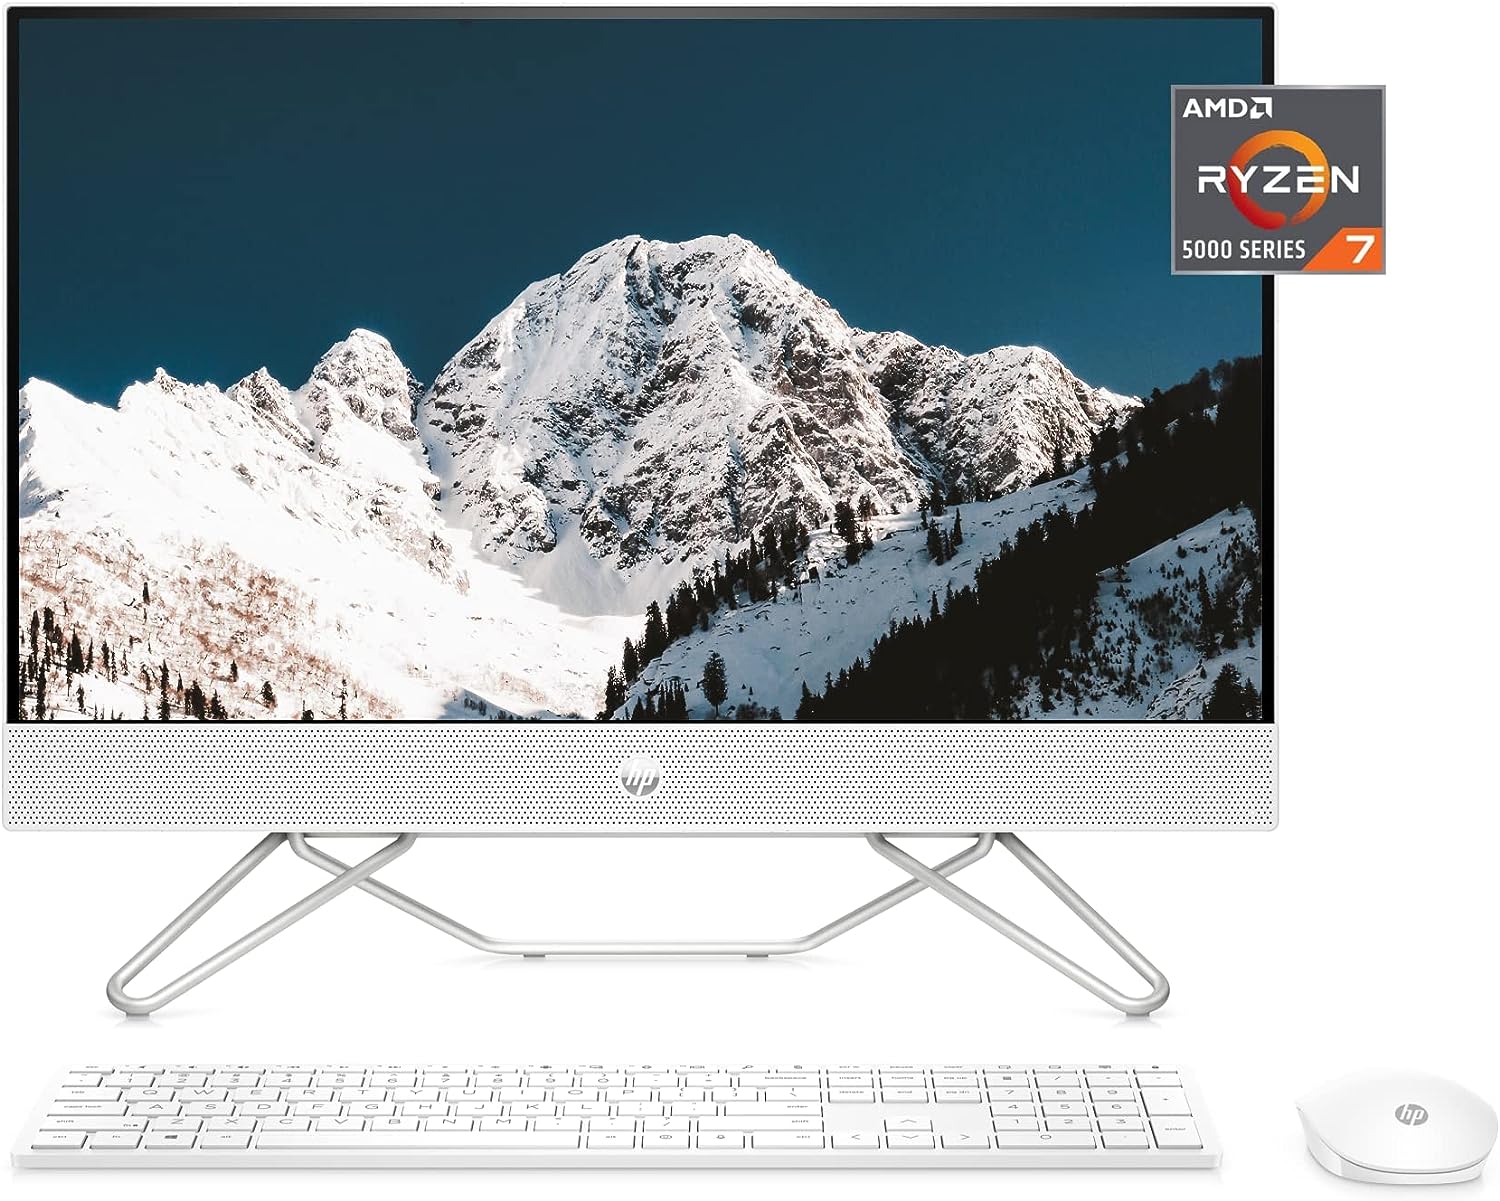 HP 27” All-in-One Desktop PC, AMD Ryzen 7 5700U